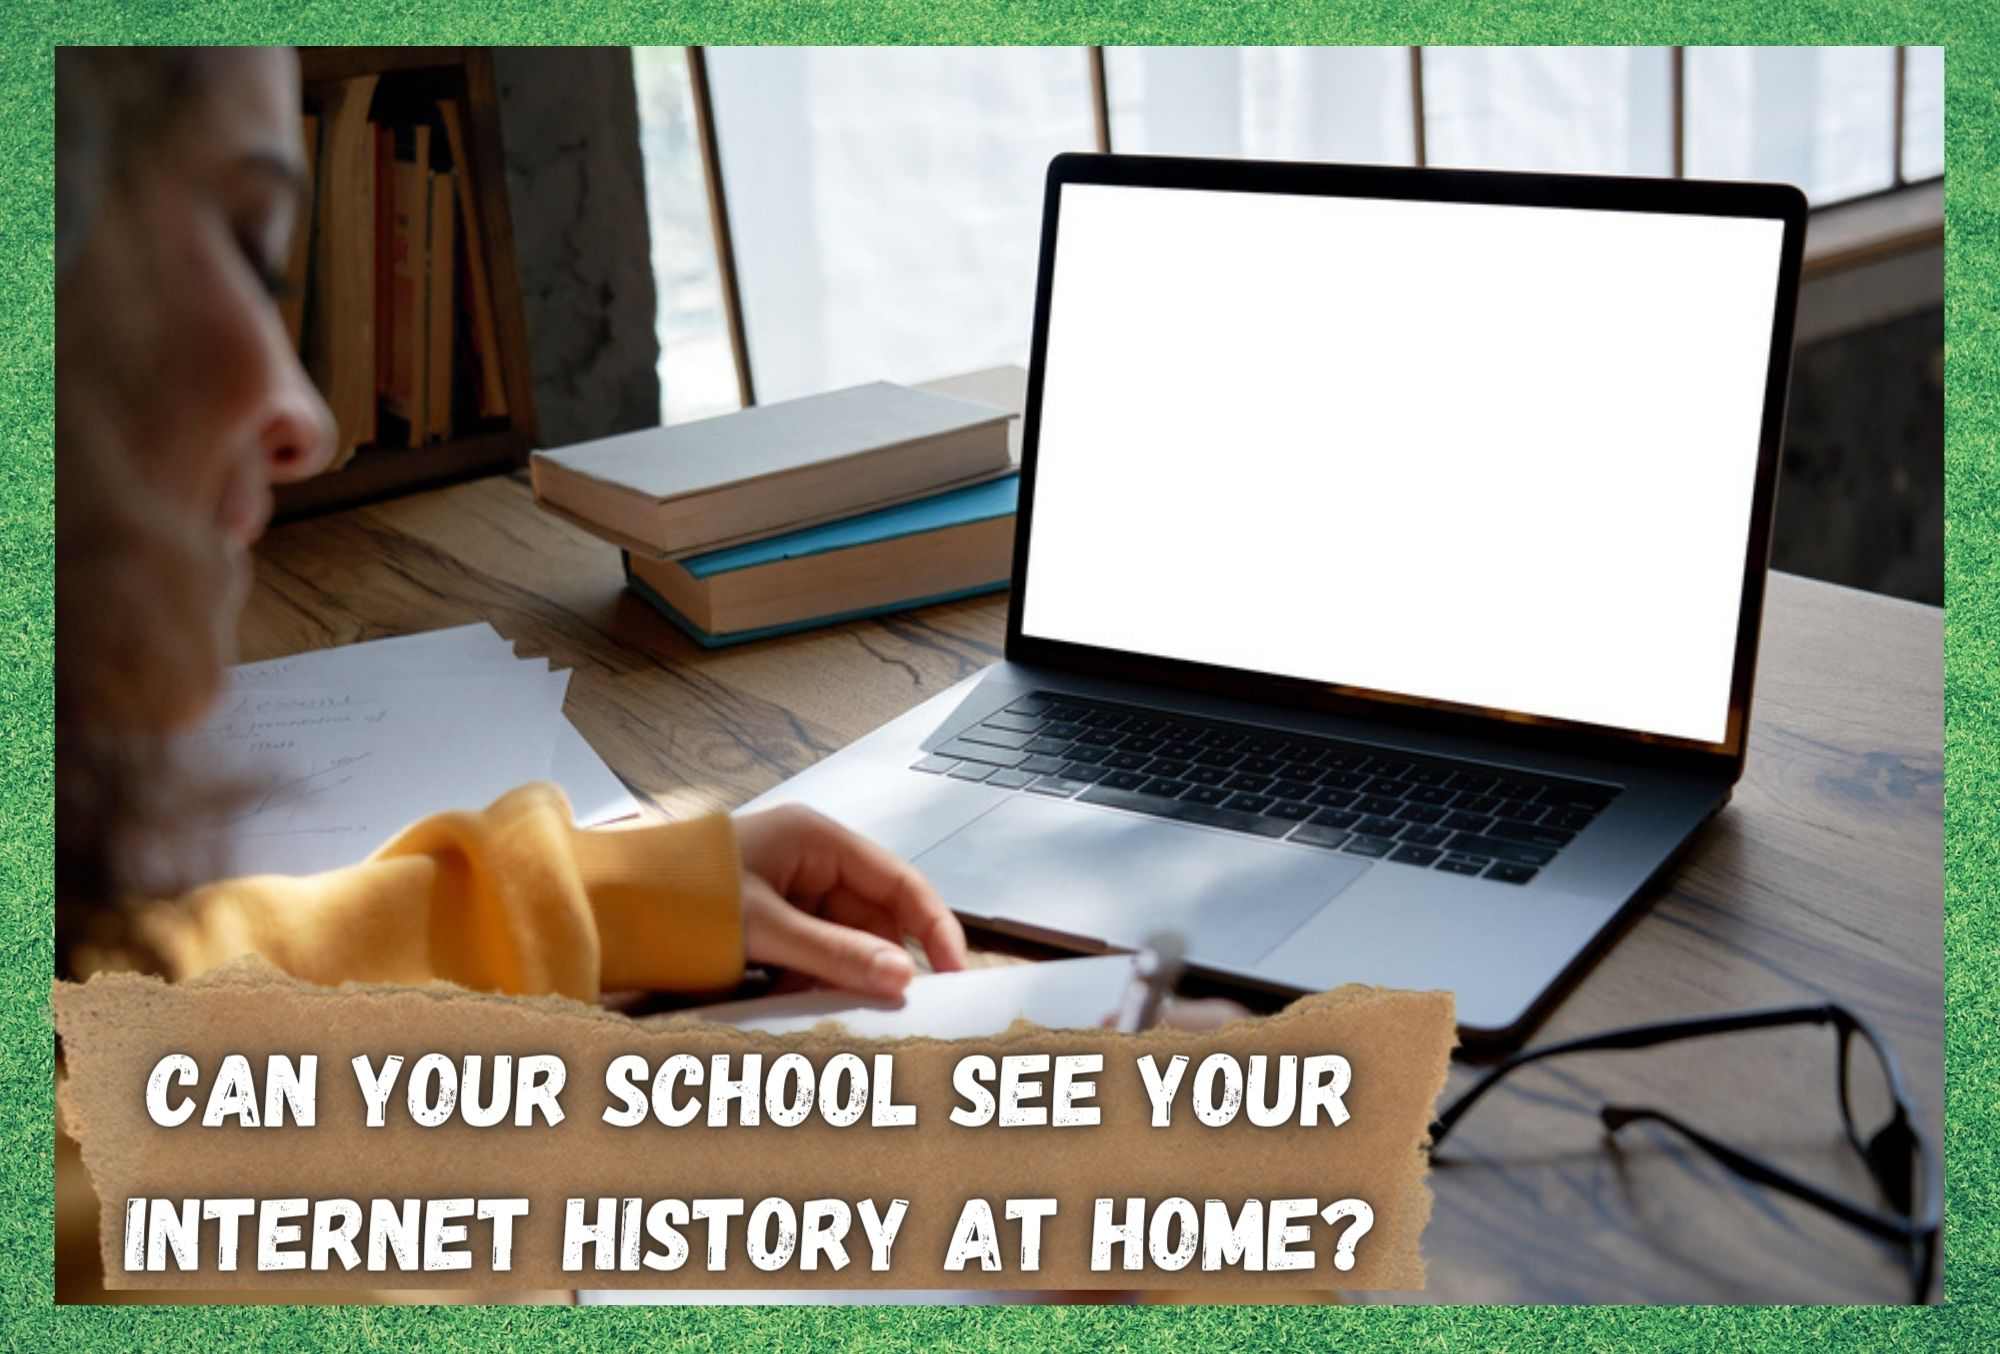 के तपाइँको विद्यालयले तपाइँको इन्टरनेट इतिहास घरमा देख्न सक्छ?